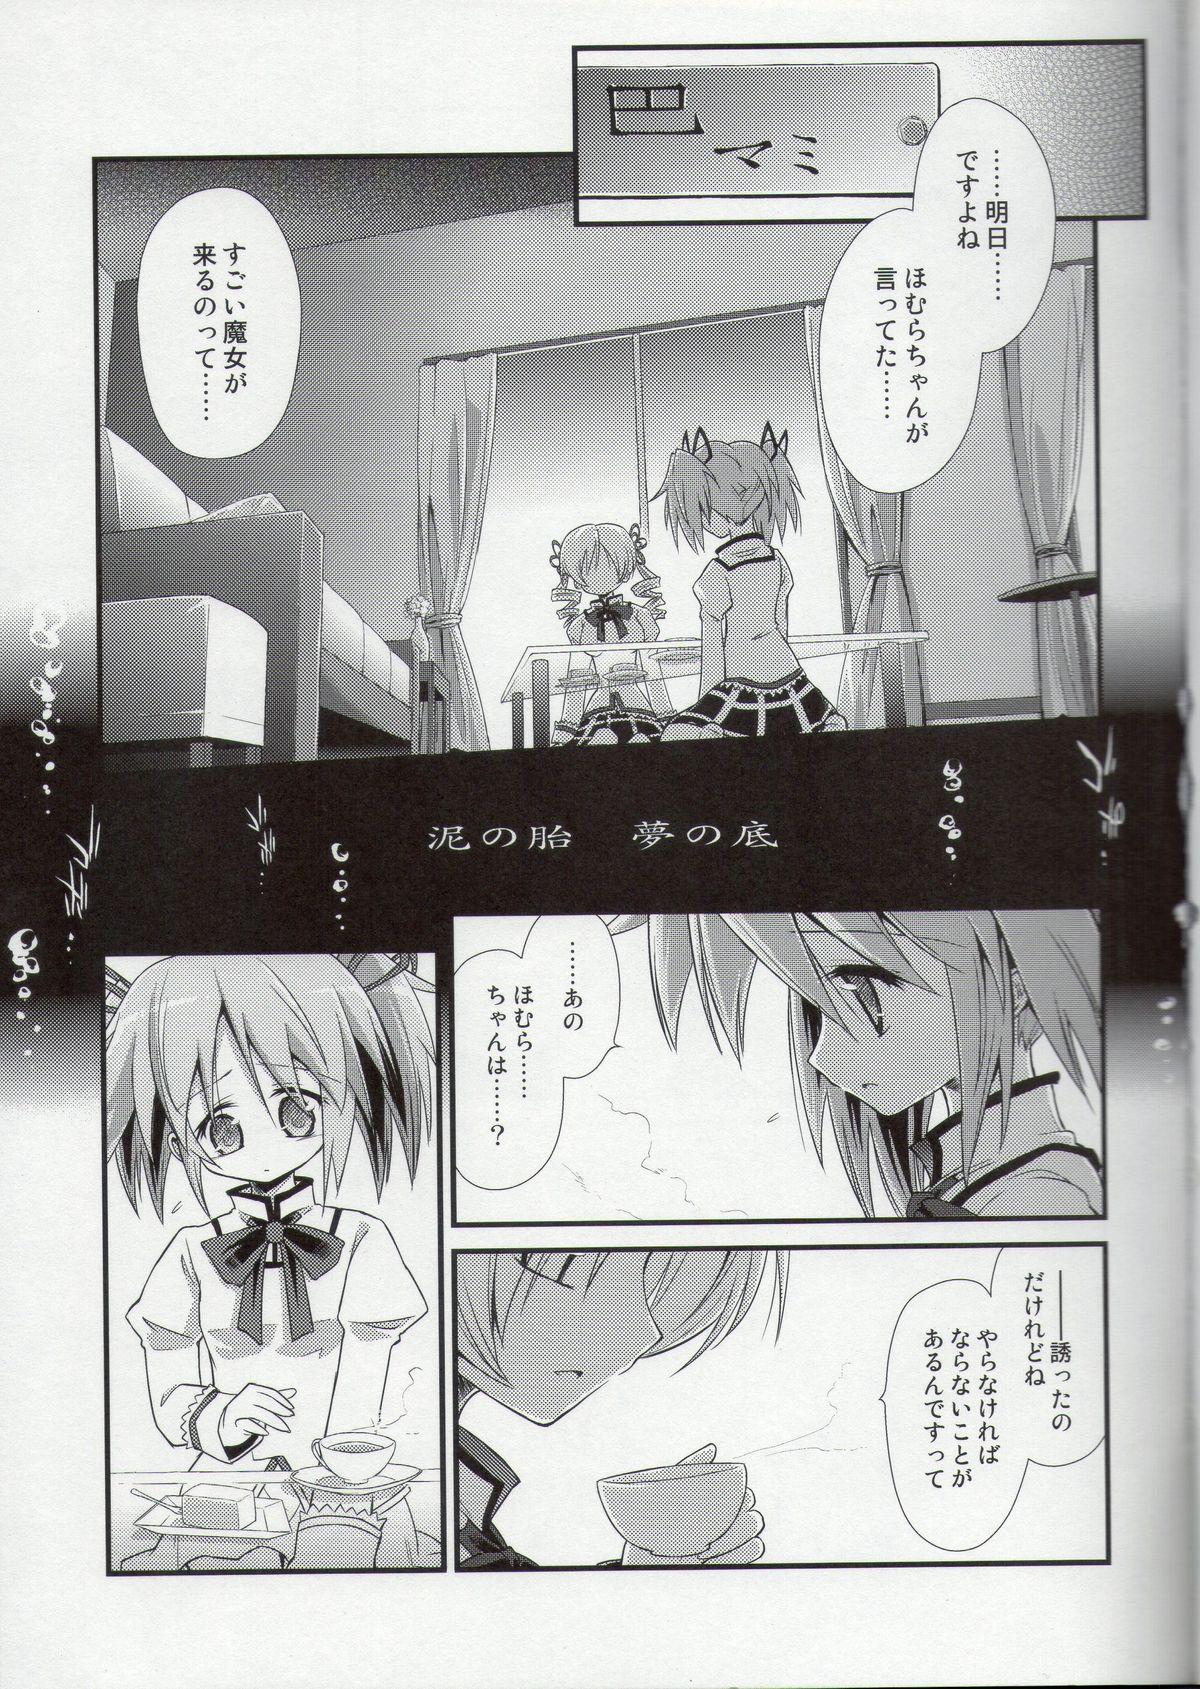 Fantasy Doro no Naka Yume no Soko - Puella magi madoka magica Hairypussy - Page 3